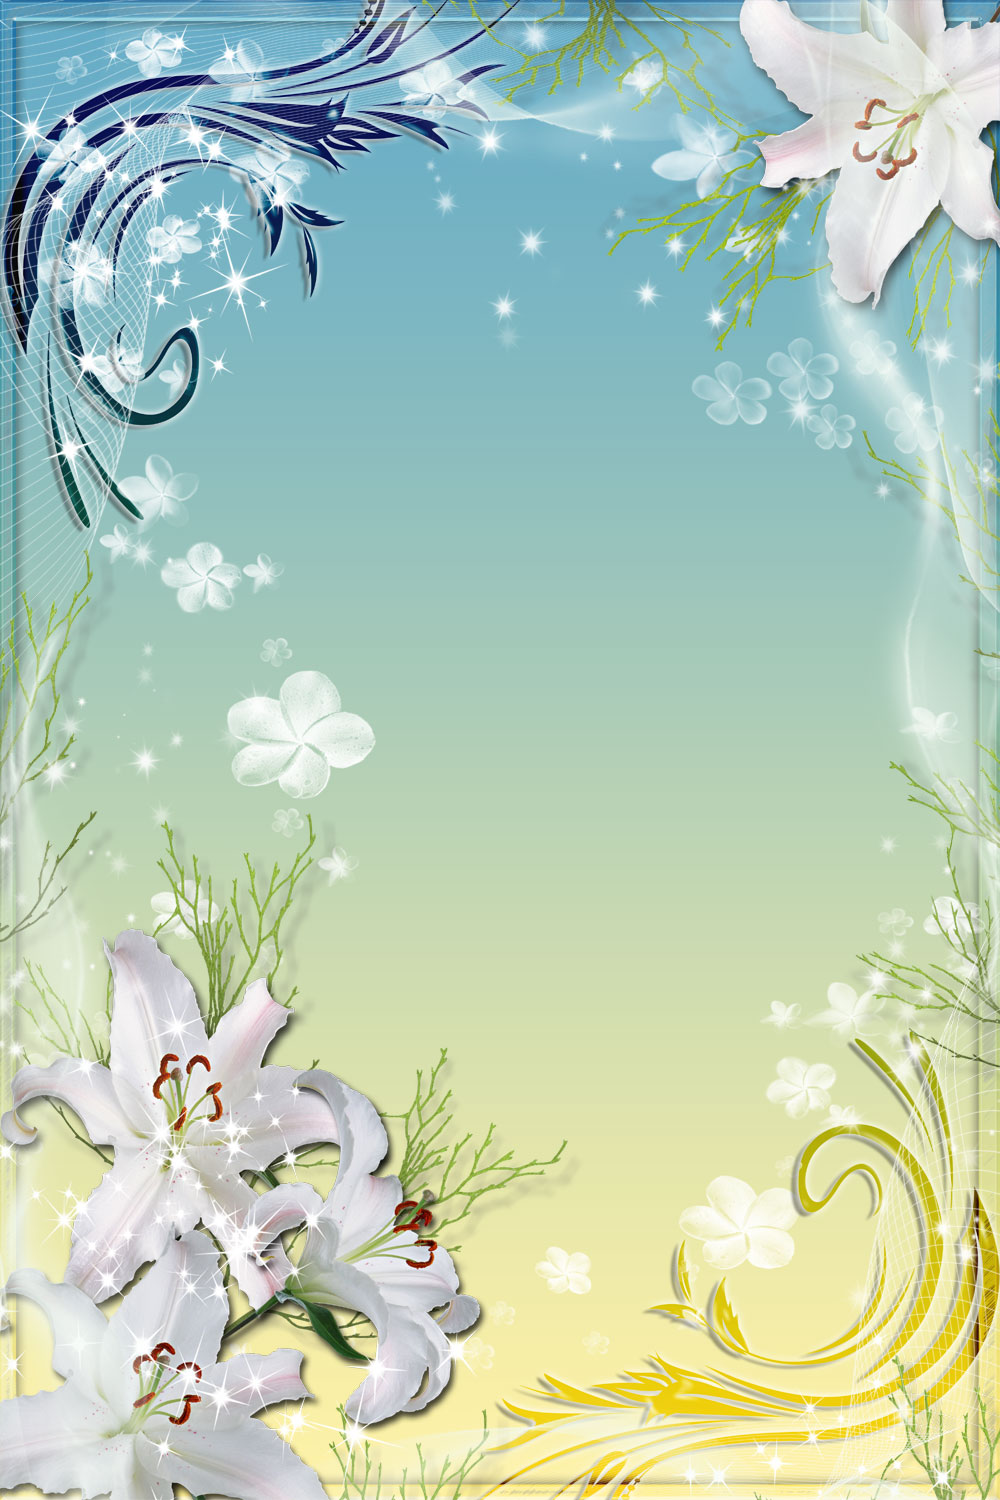 百合 ゆり の花の画像 イラスト フリー素材 No 128 ユリ ゴージャス